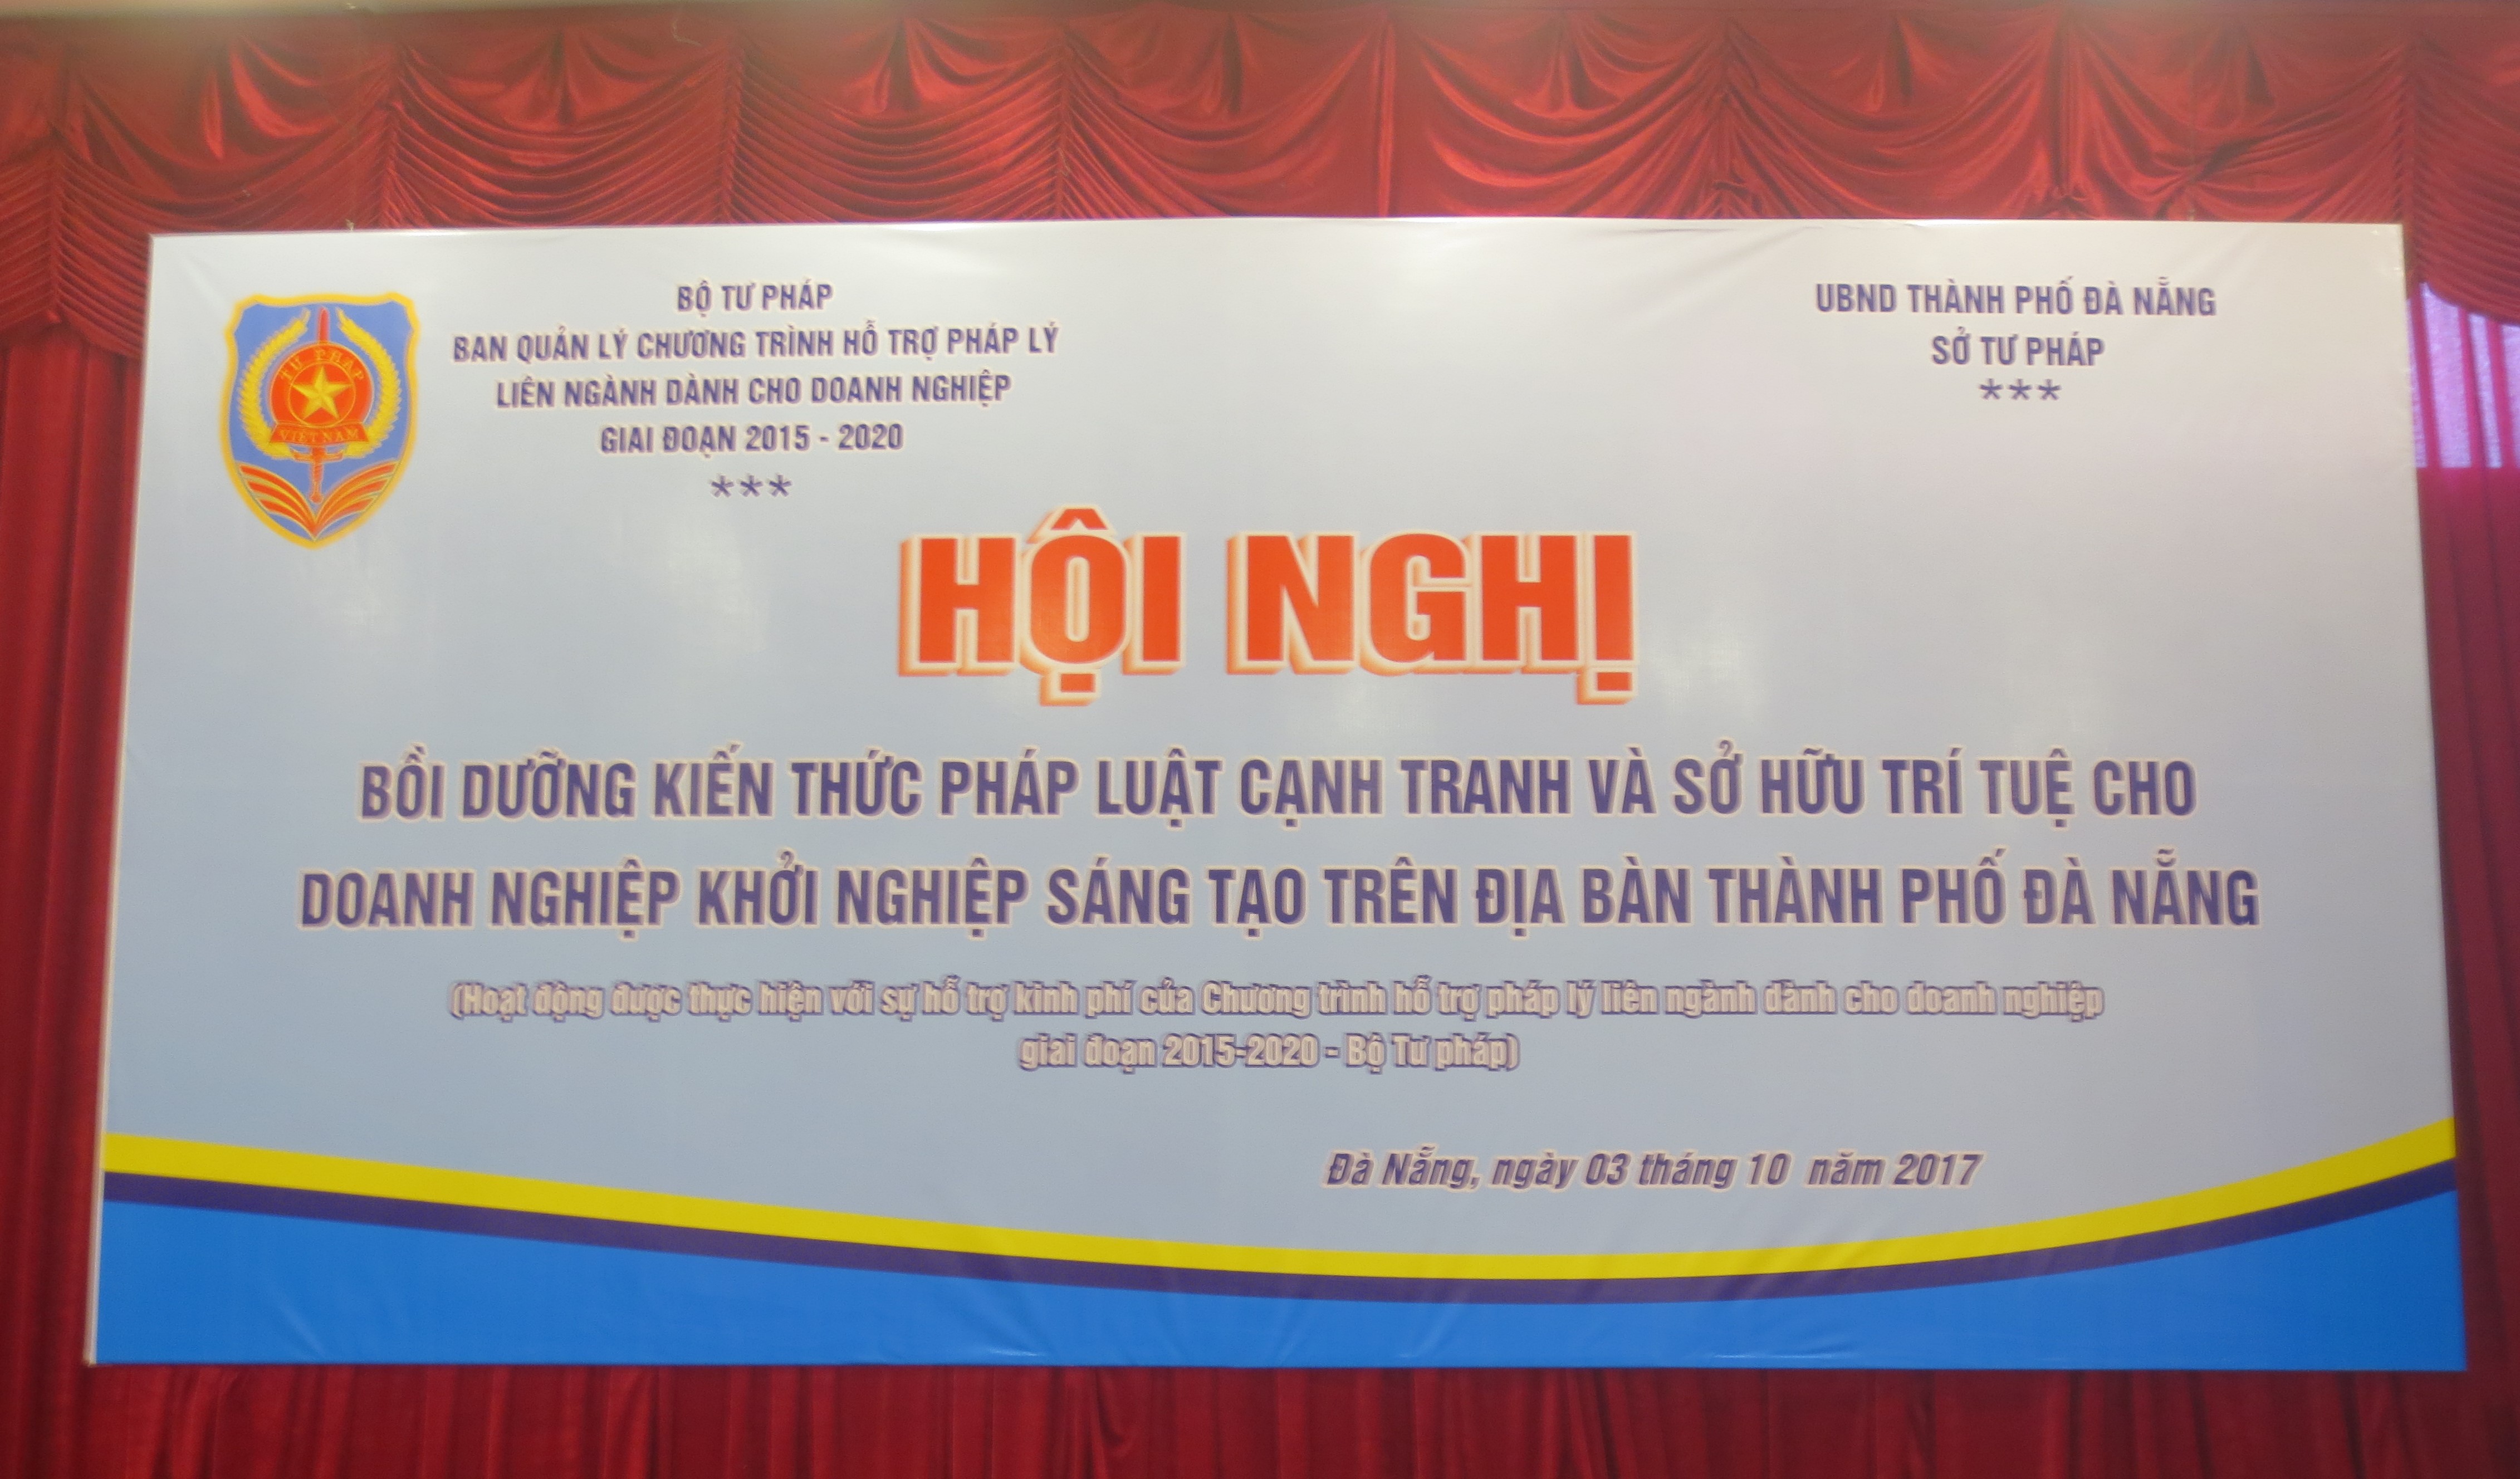 Tọa đàm bồi dưỡng kiến thức pháp luật cạnh tranh và sở hữu trí tuệ cho doanh nghiệp khởi nghiệp, sáng tạo trên địa bàn thành phố Đà Nẵng